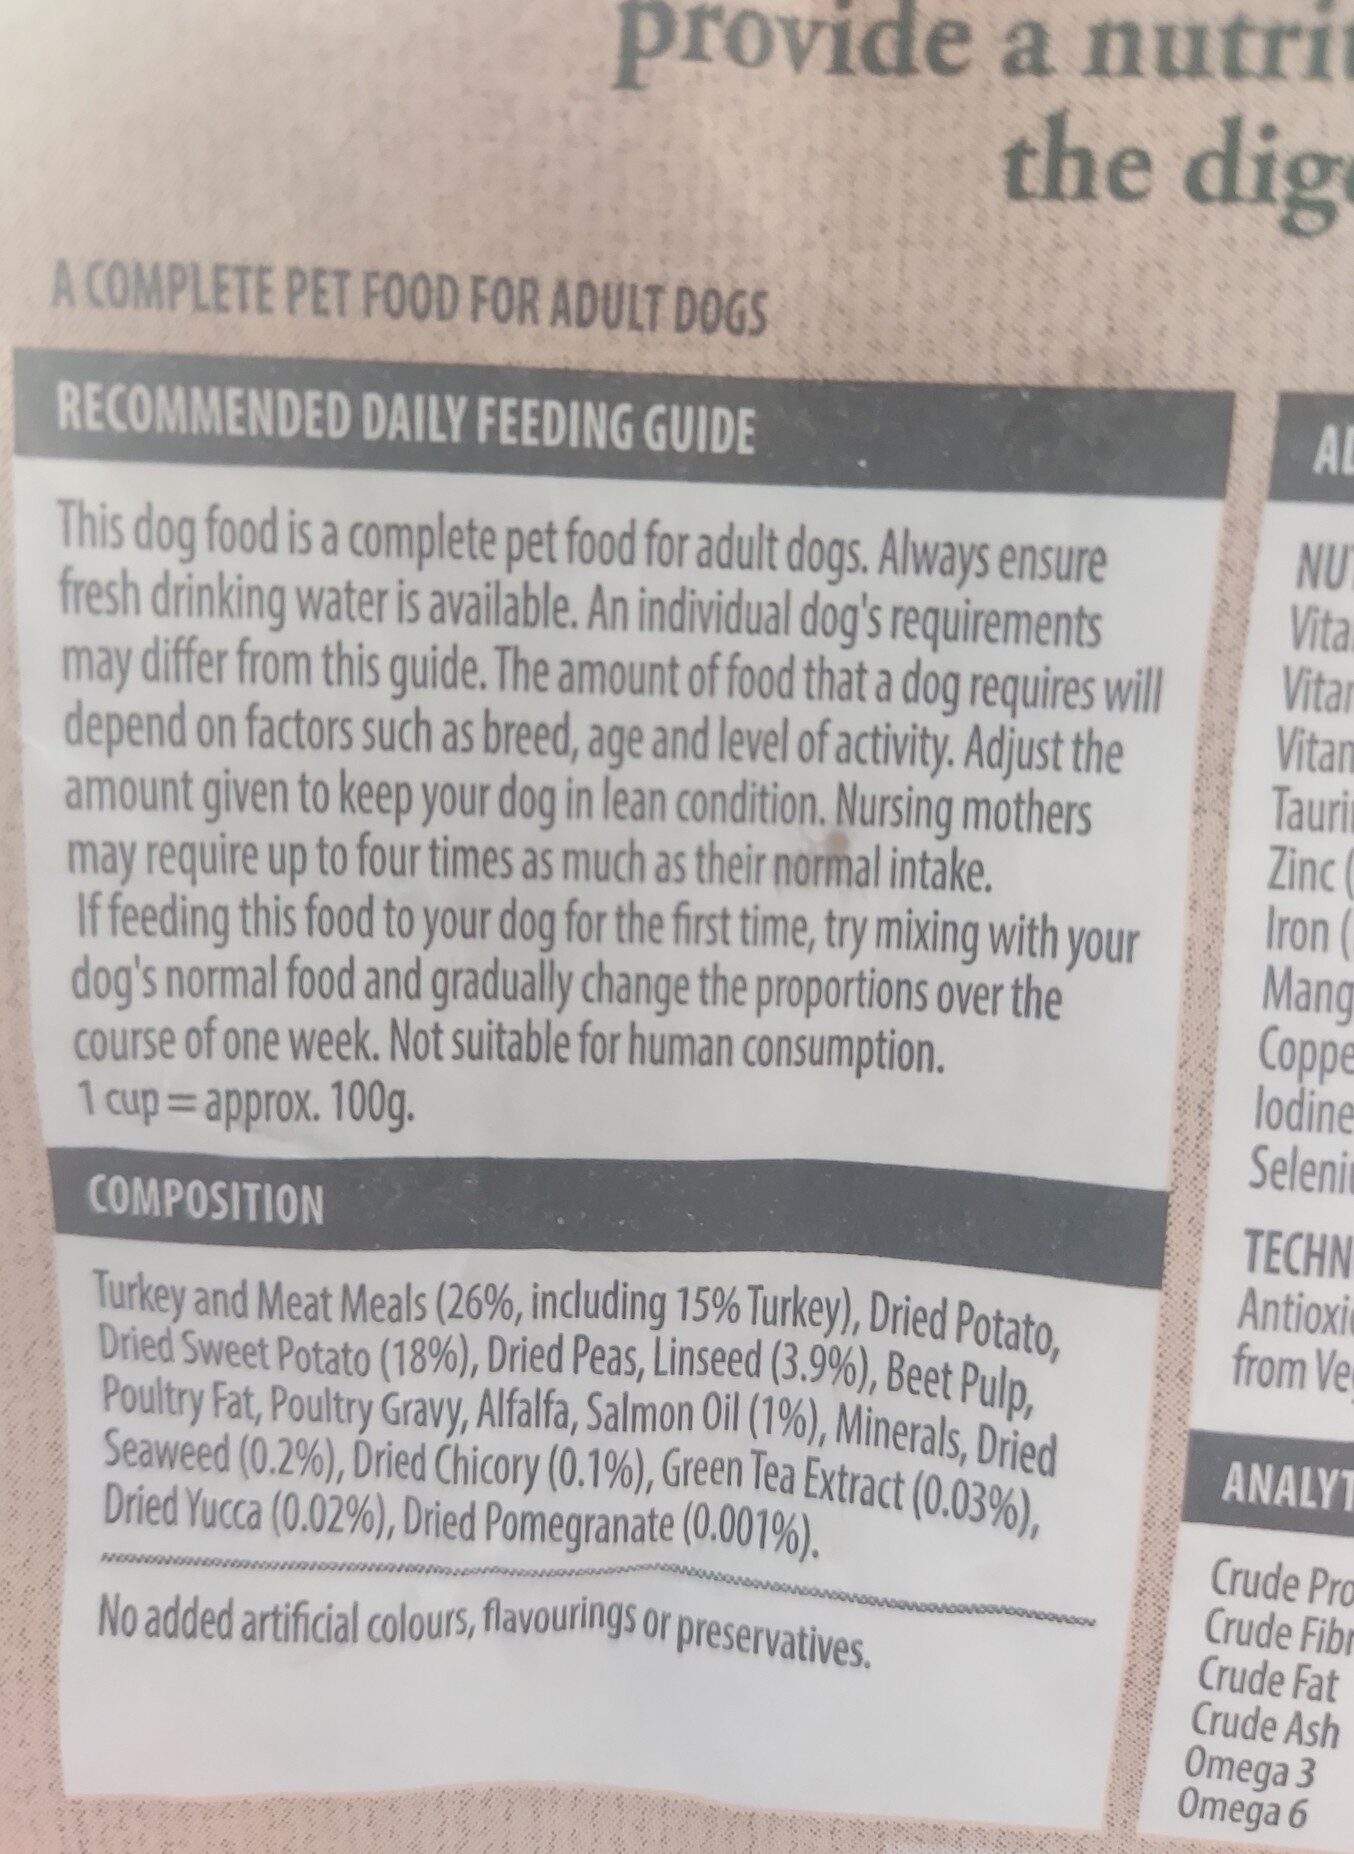 langhams grain free dog food - Ingredients - en